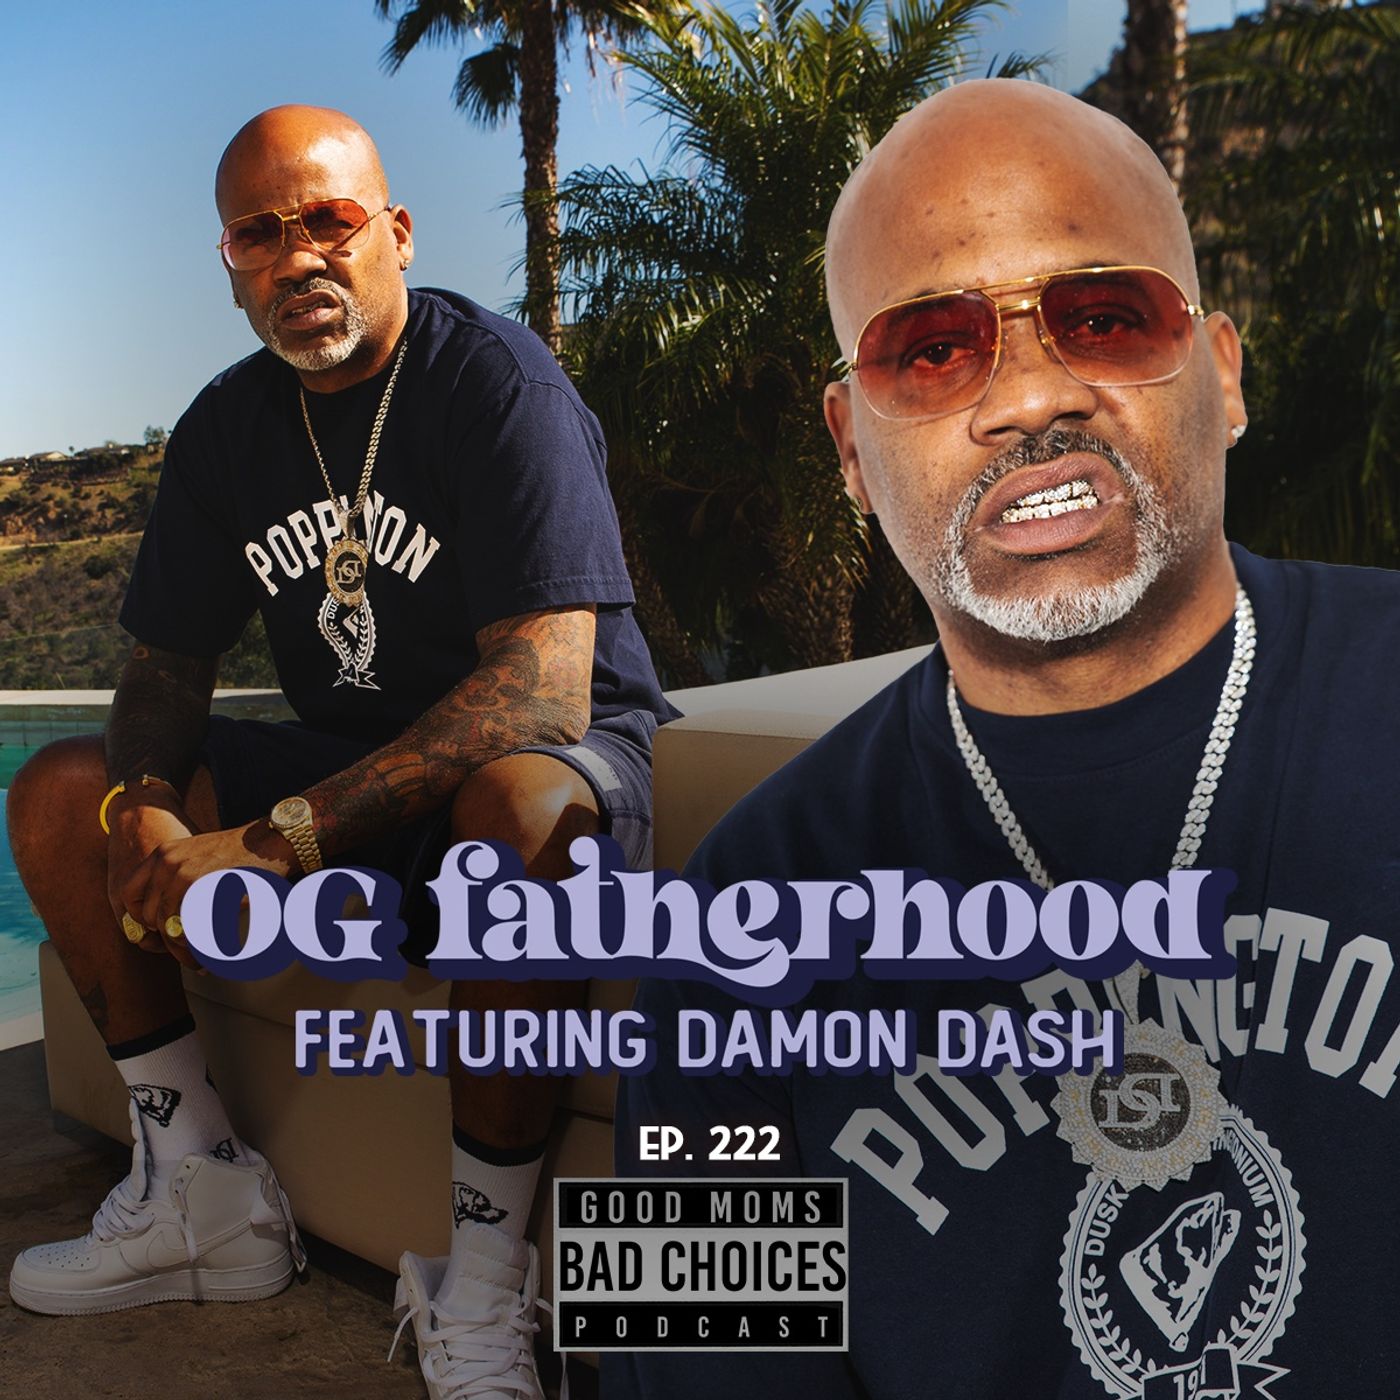 OG Fatherhood Feat. Dame Dash Image